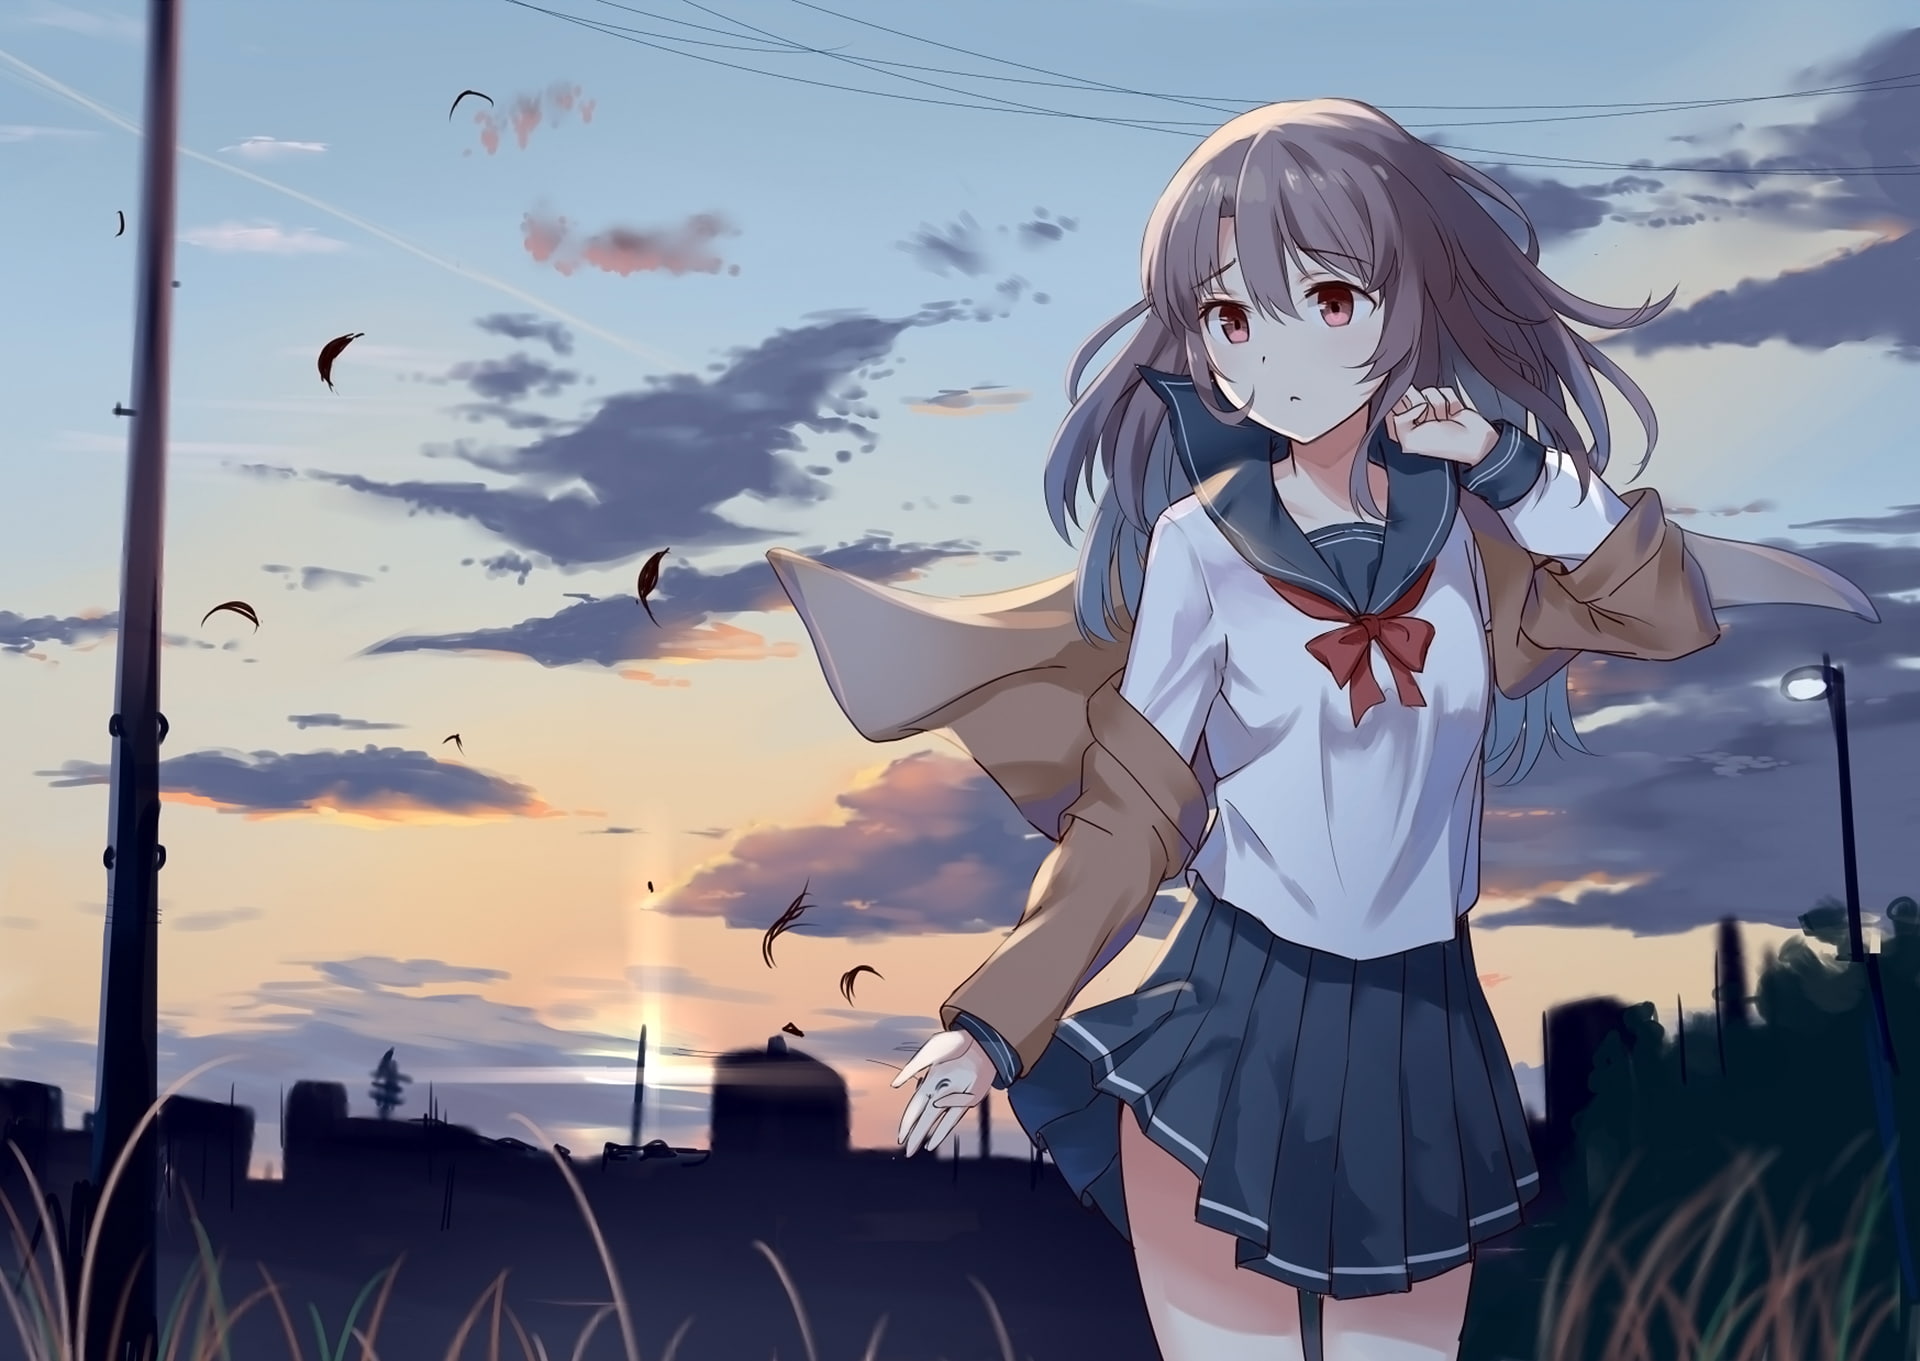 Anime Girl In School Uniform - HD Wallpaper 